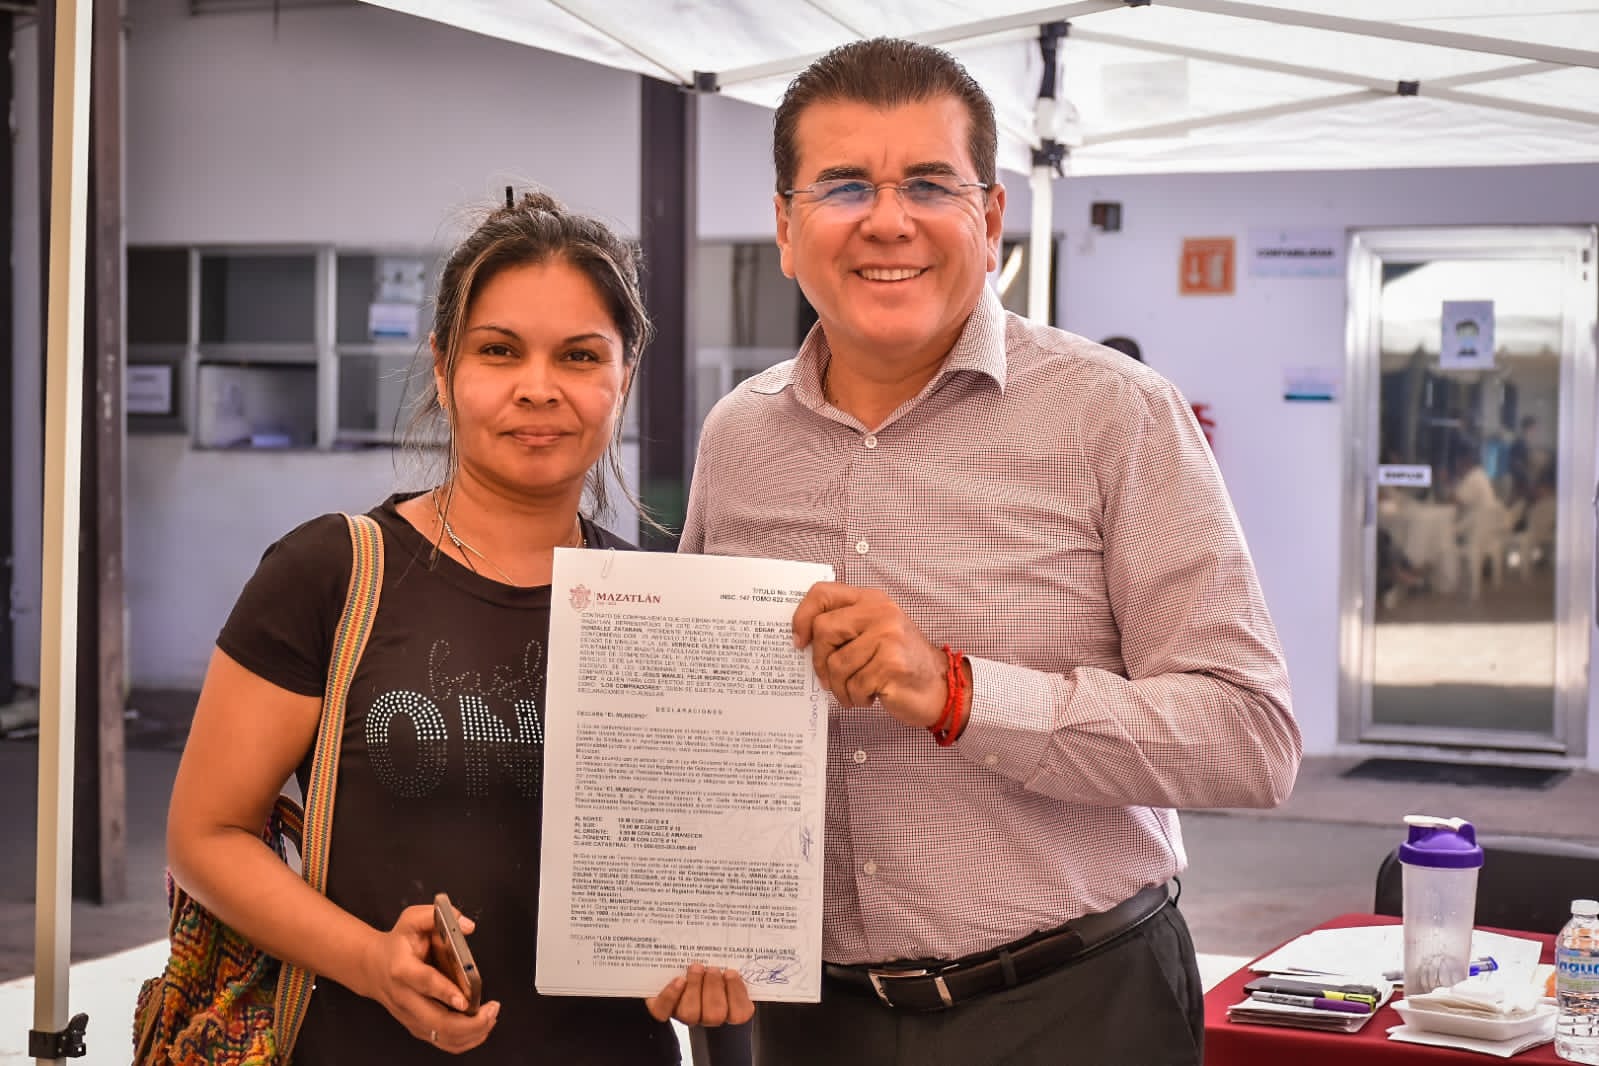 Gobierno Municipal trata de dar respuesta inmediata a ciudadanos mediante el programa “Escuchando a la gente”: Alcalde, Edgar González.